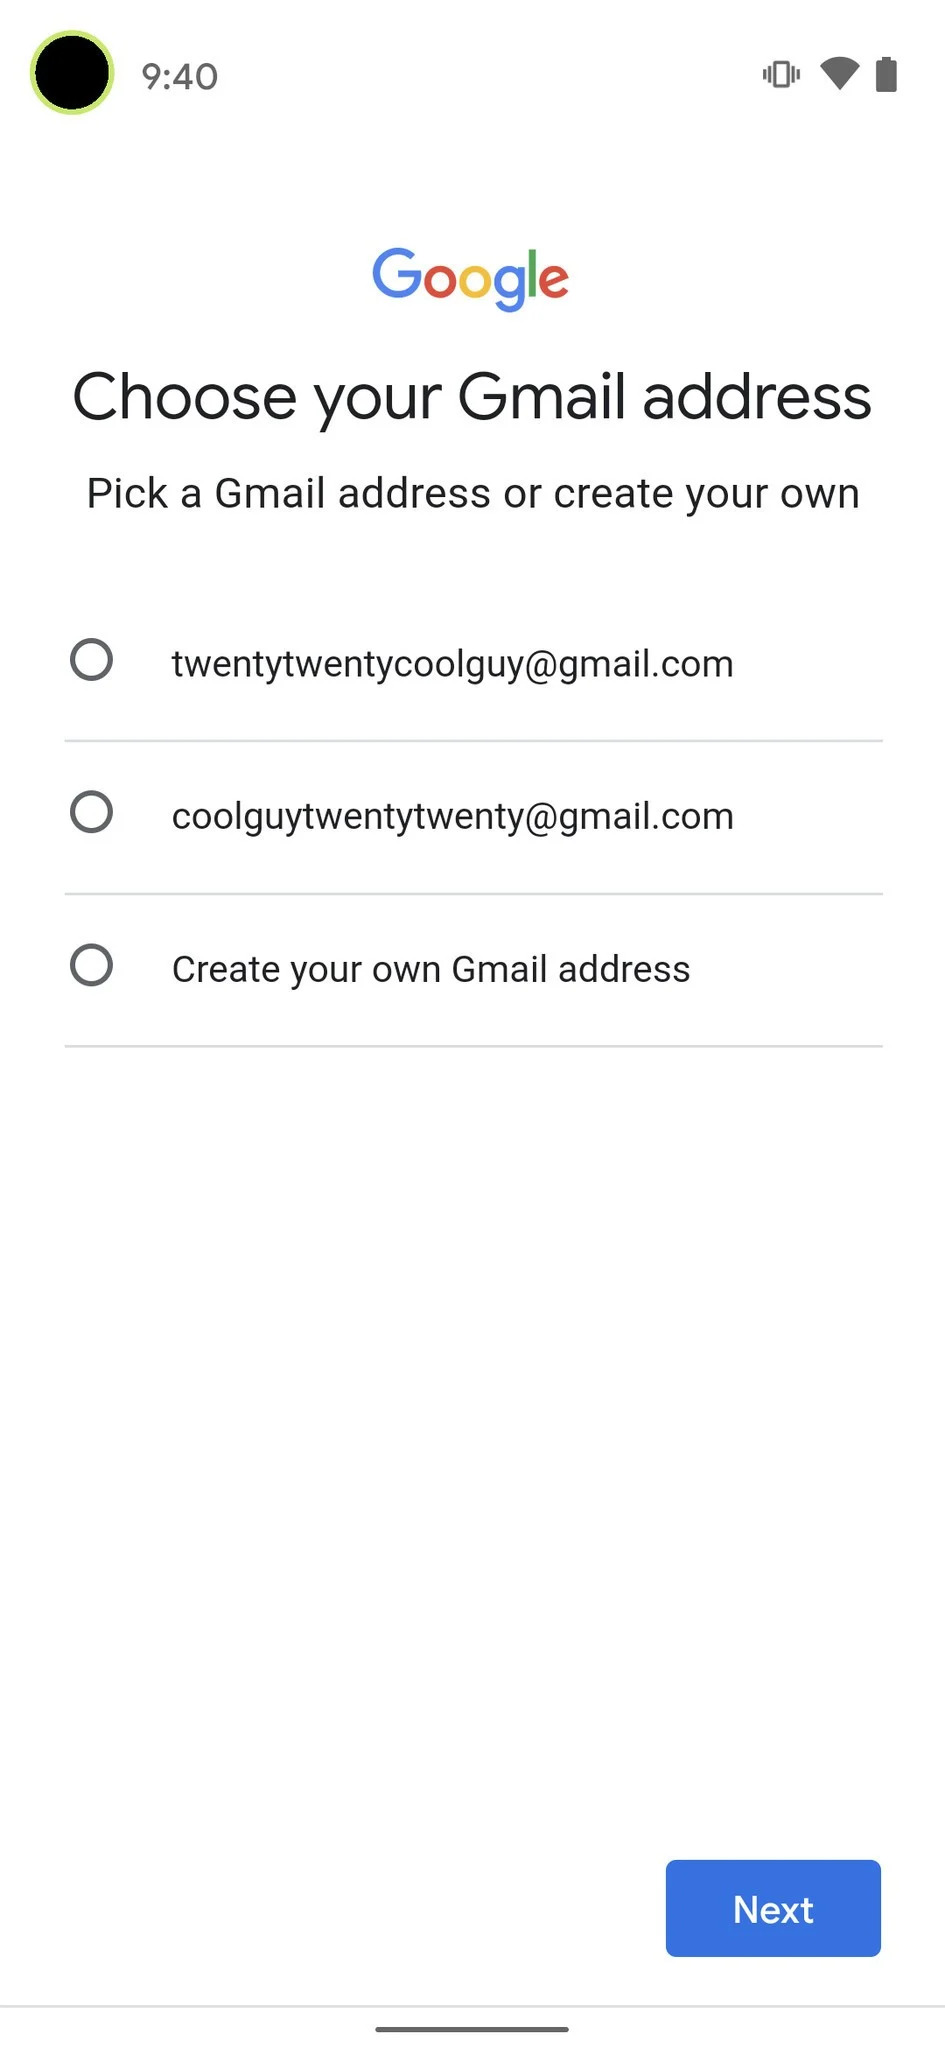 گزینه های اول و دوم پیشنهاد خود Gmail می باشد. گزینه سوم را بزنید و نام جیمیل خود را شخصی سازی کنید.